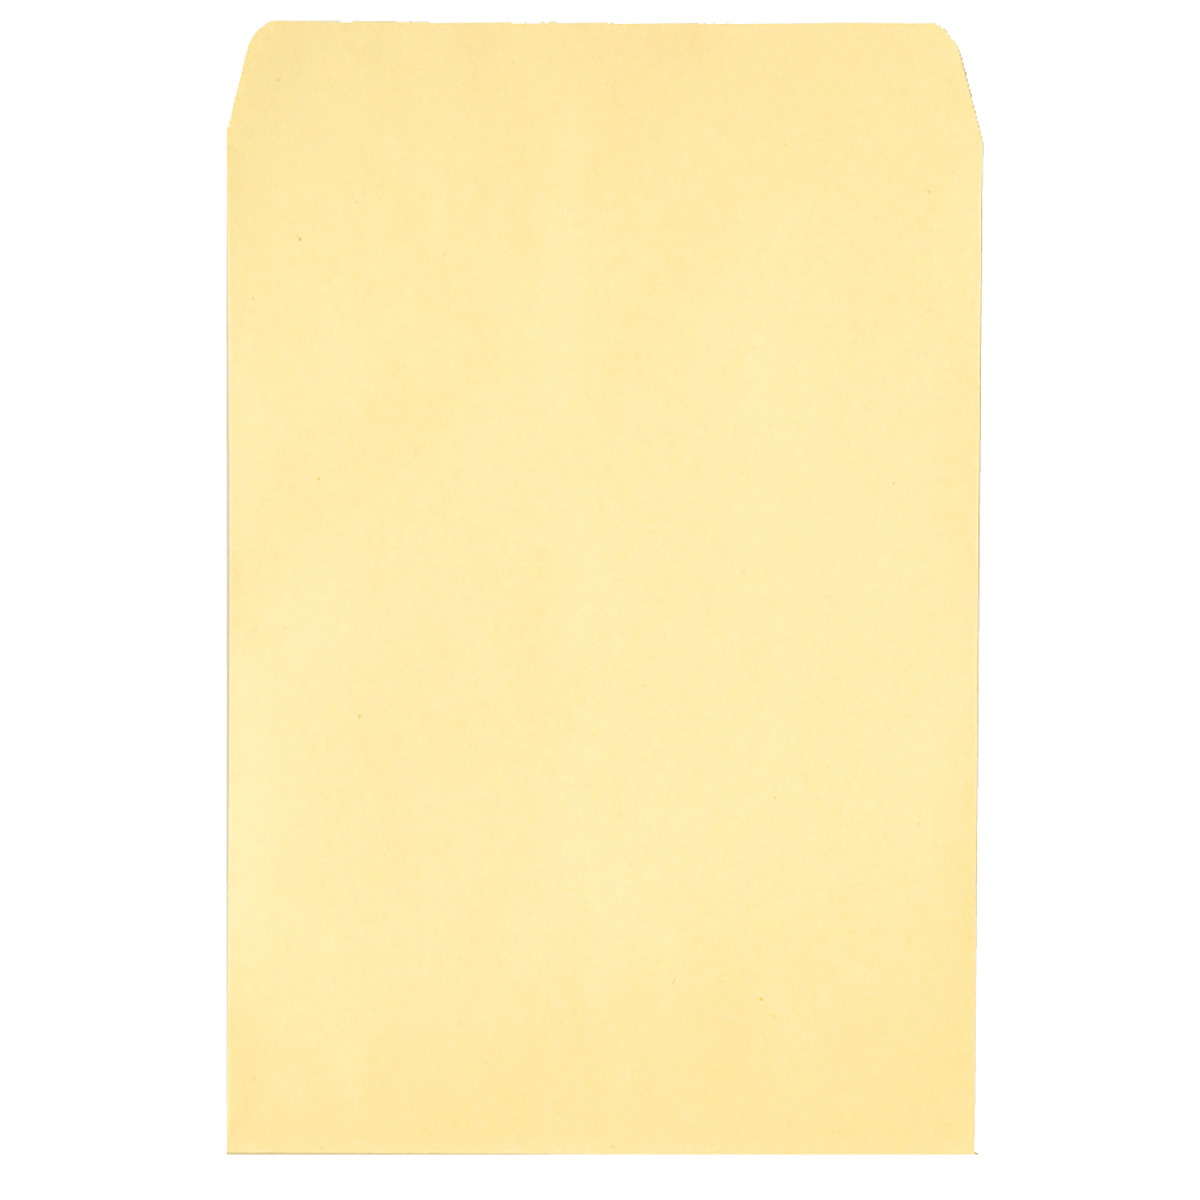 화신 황색 서류봉투 10매 15팩